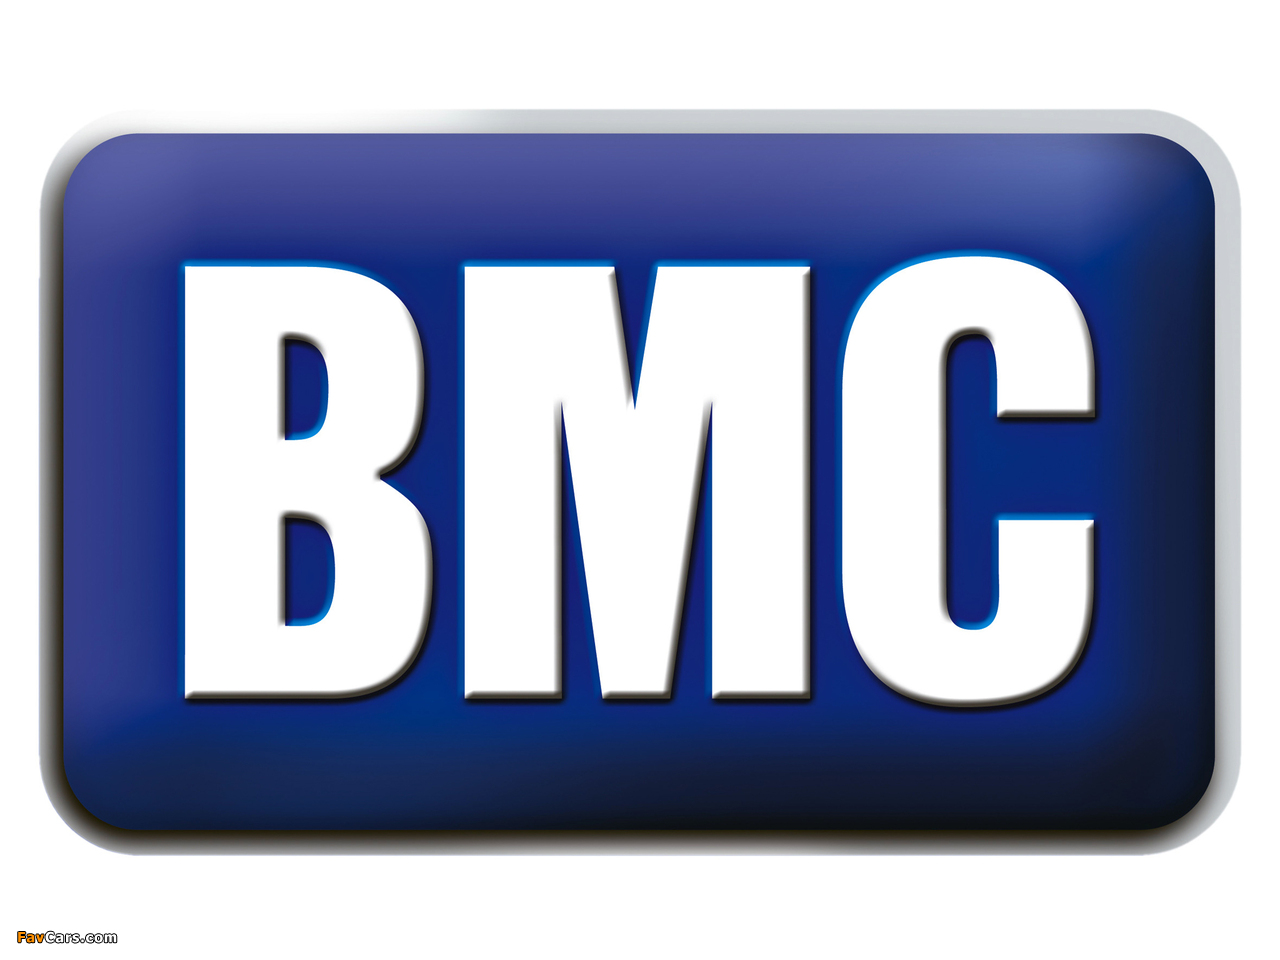 BMC photos (1280 x 960)